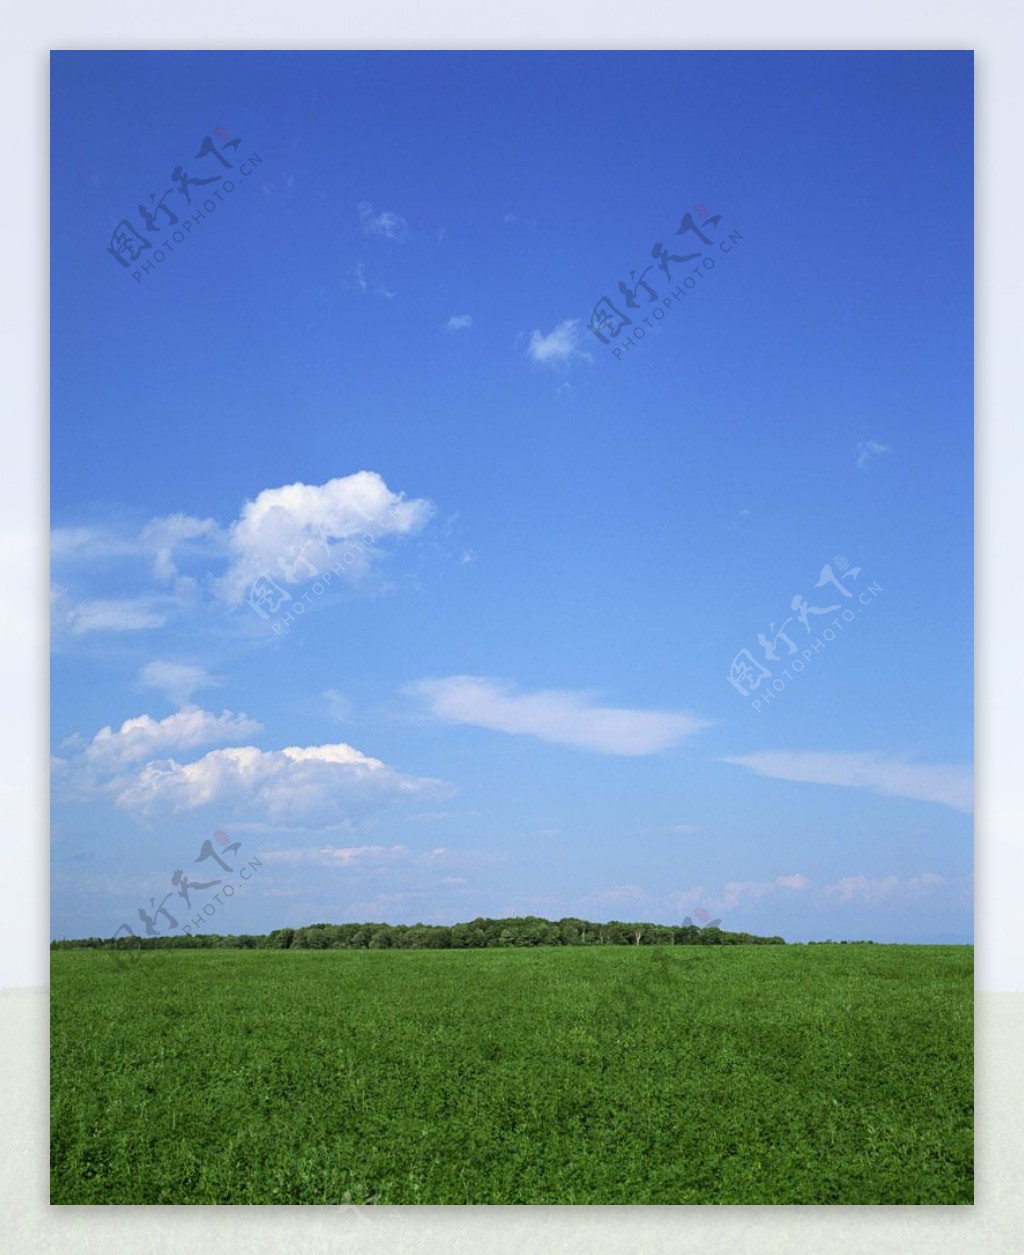 草原上的风光自然风景图片